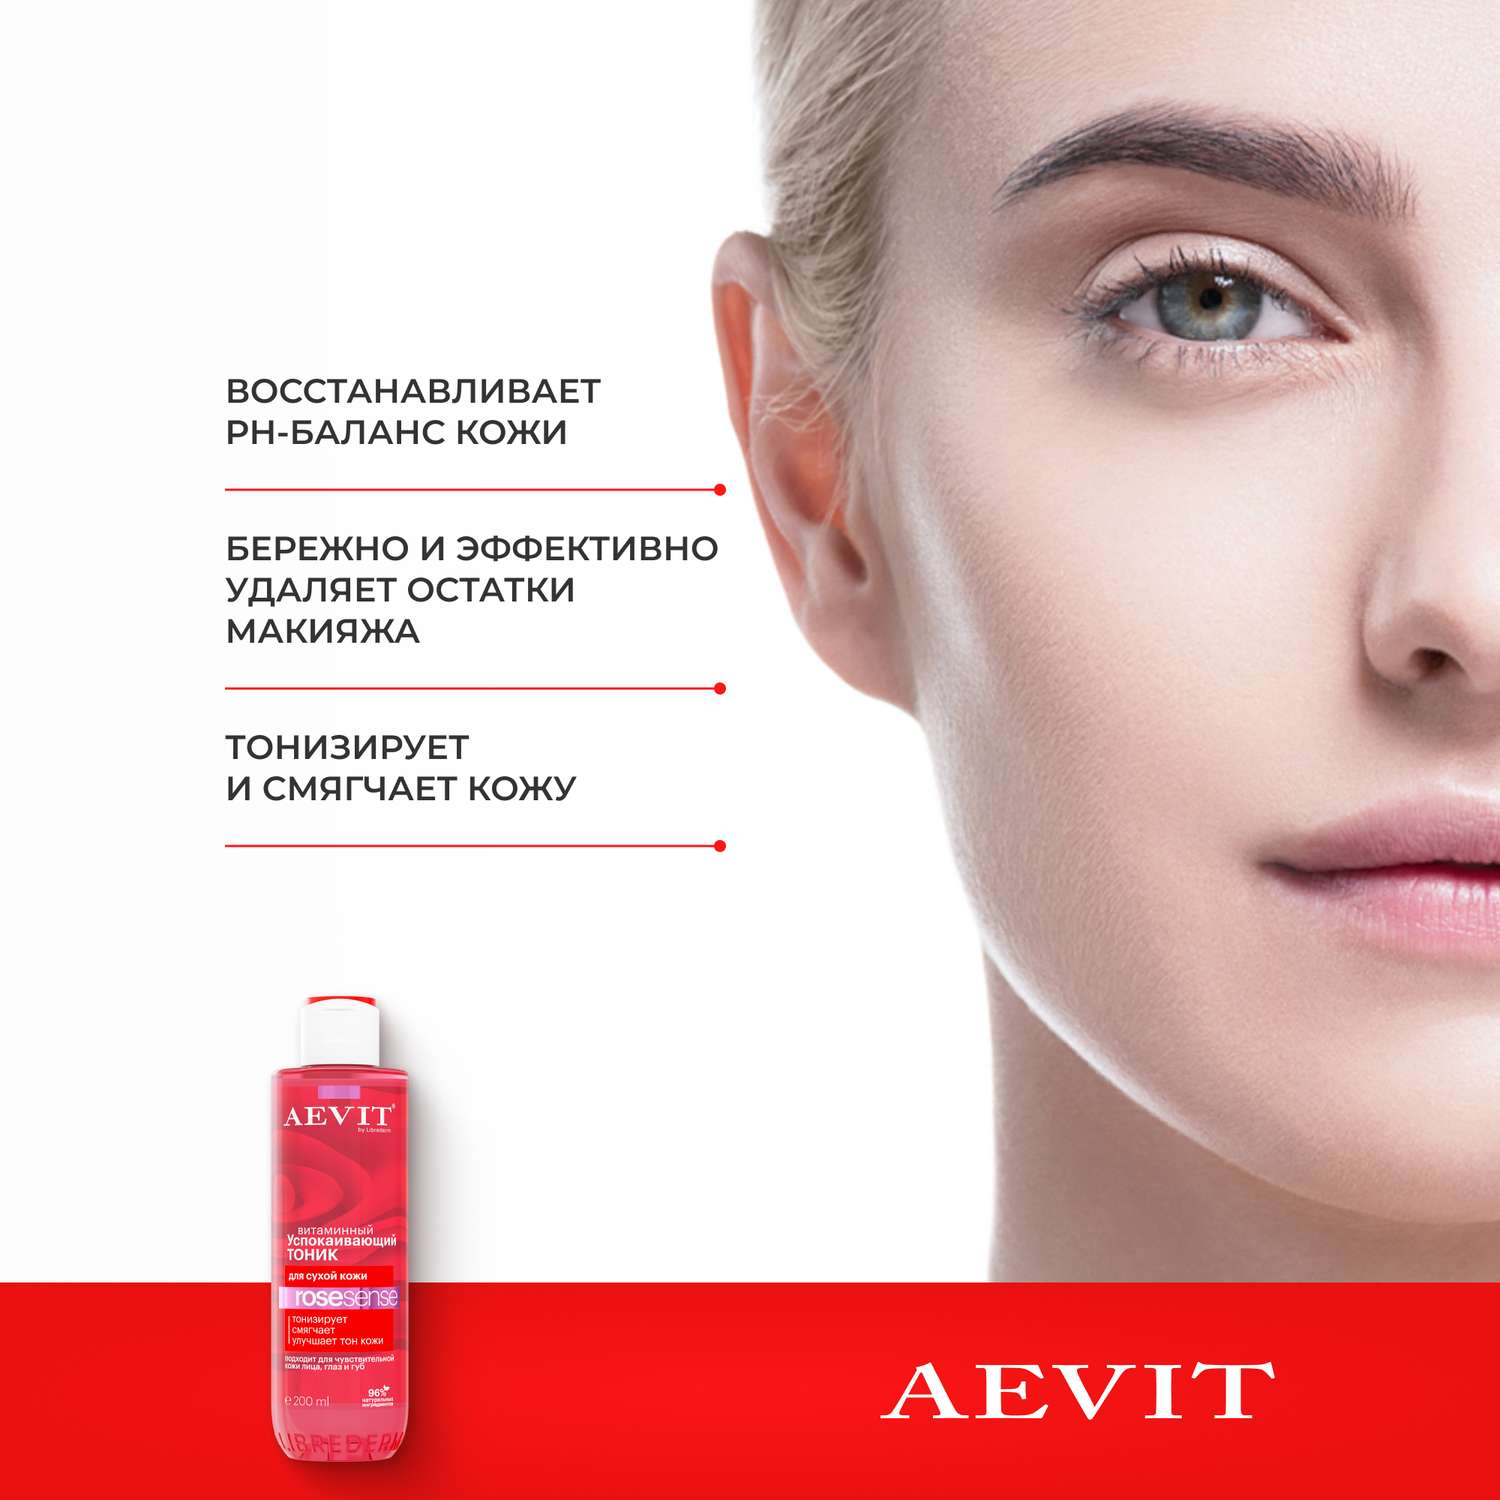 Тоник AEVIT успокаивающий витаминный для тусклой и сухой кожи 200 мл - фото 3